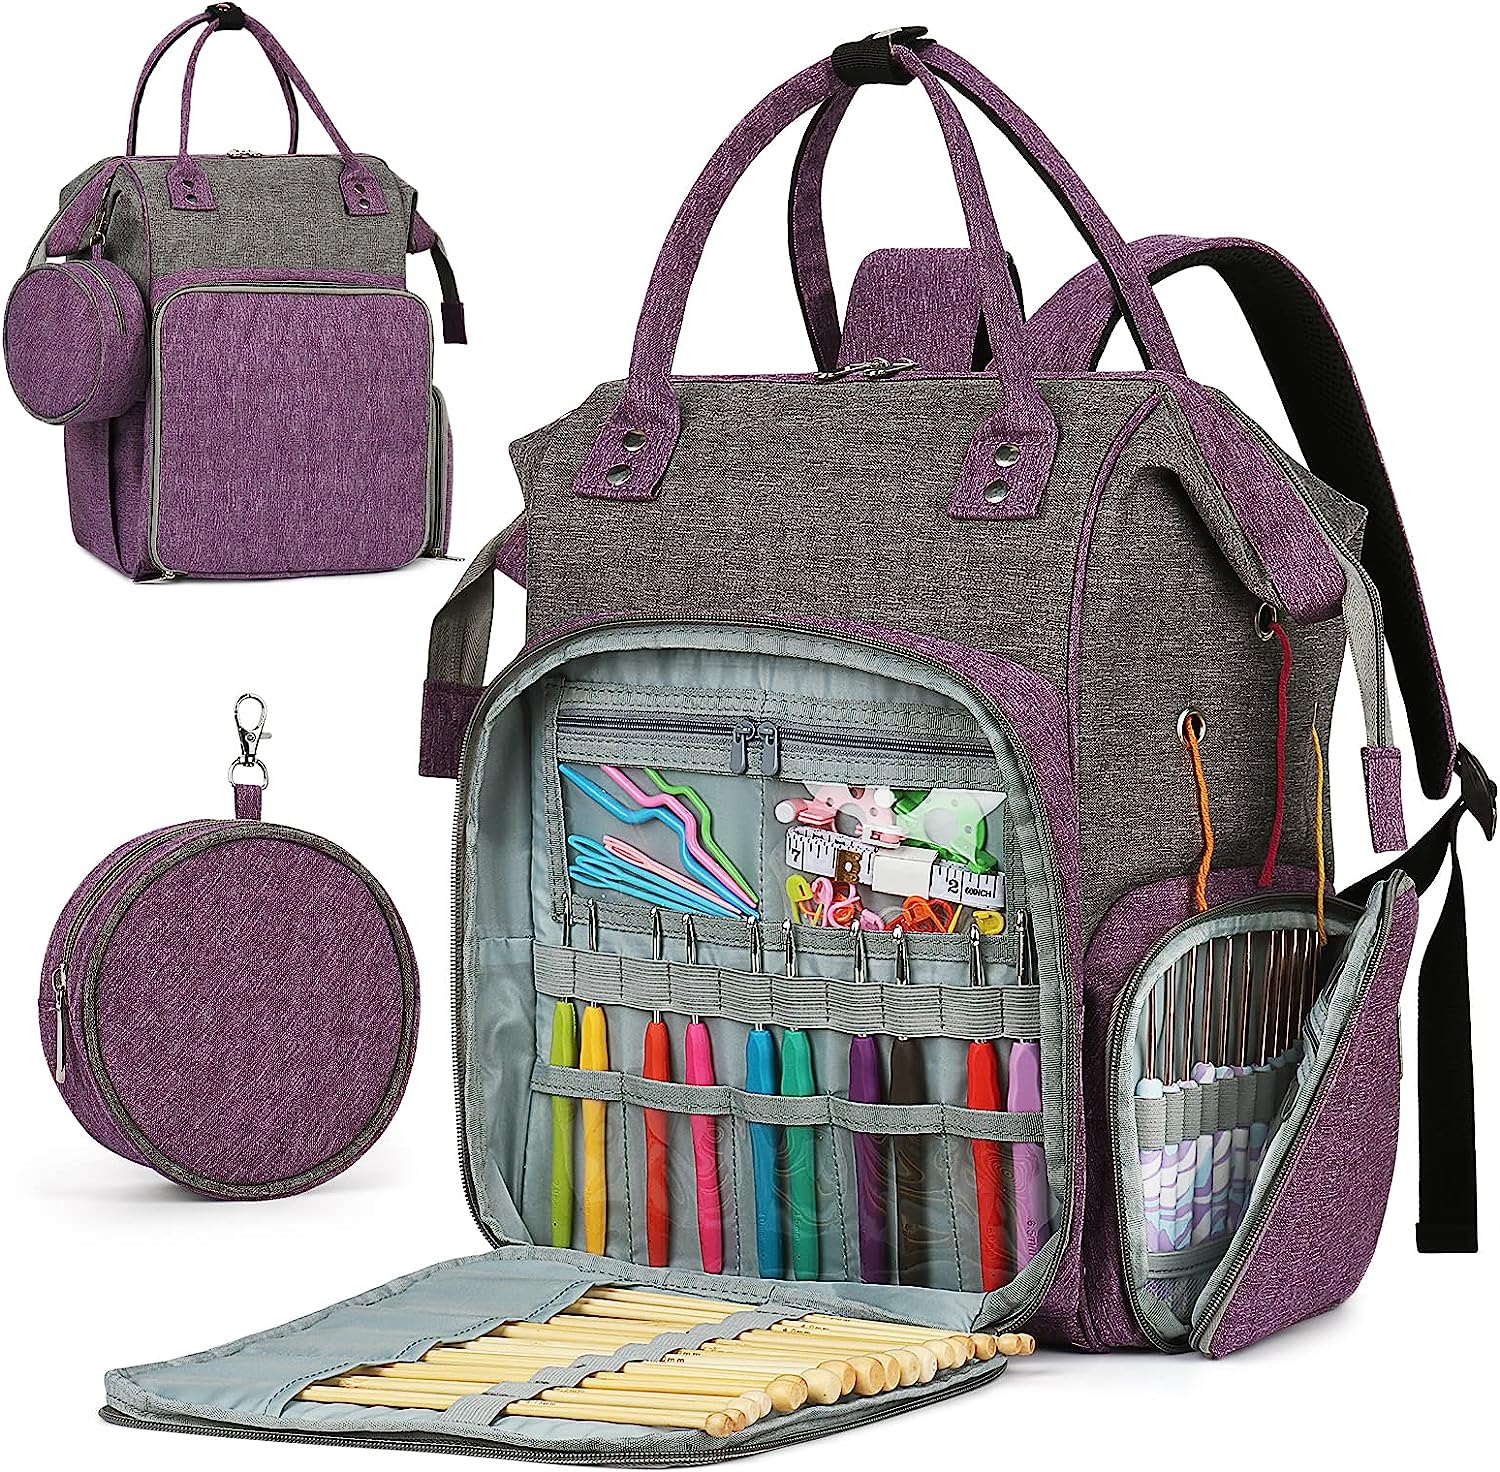 Blushbees® Large Knitting Bag - Yarn Storage Organizer